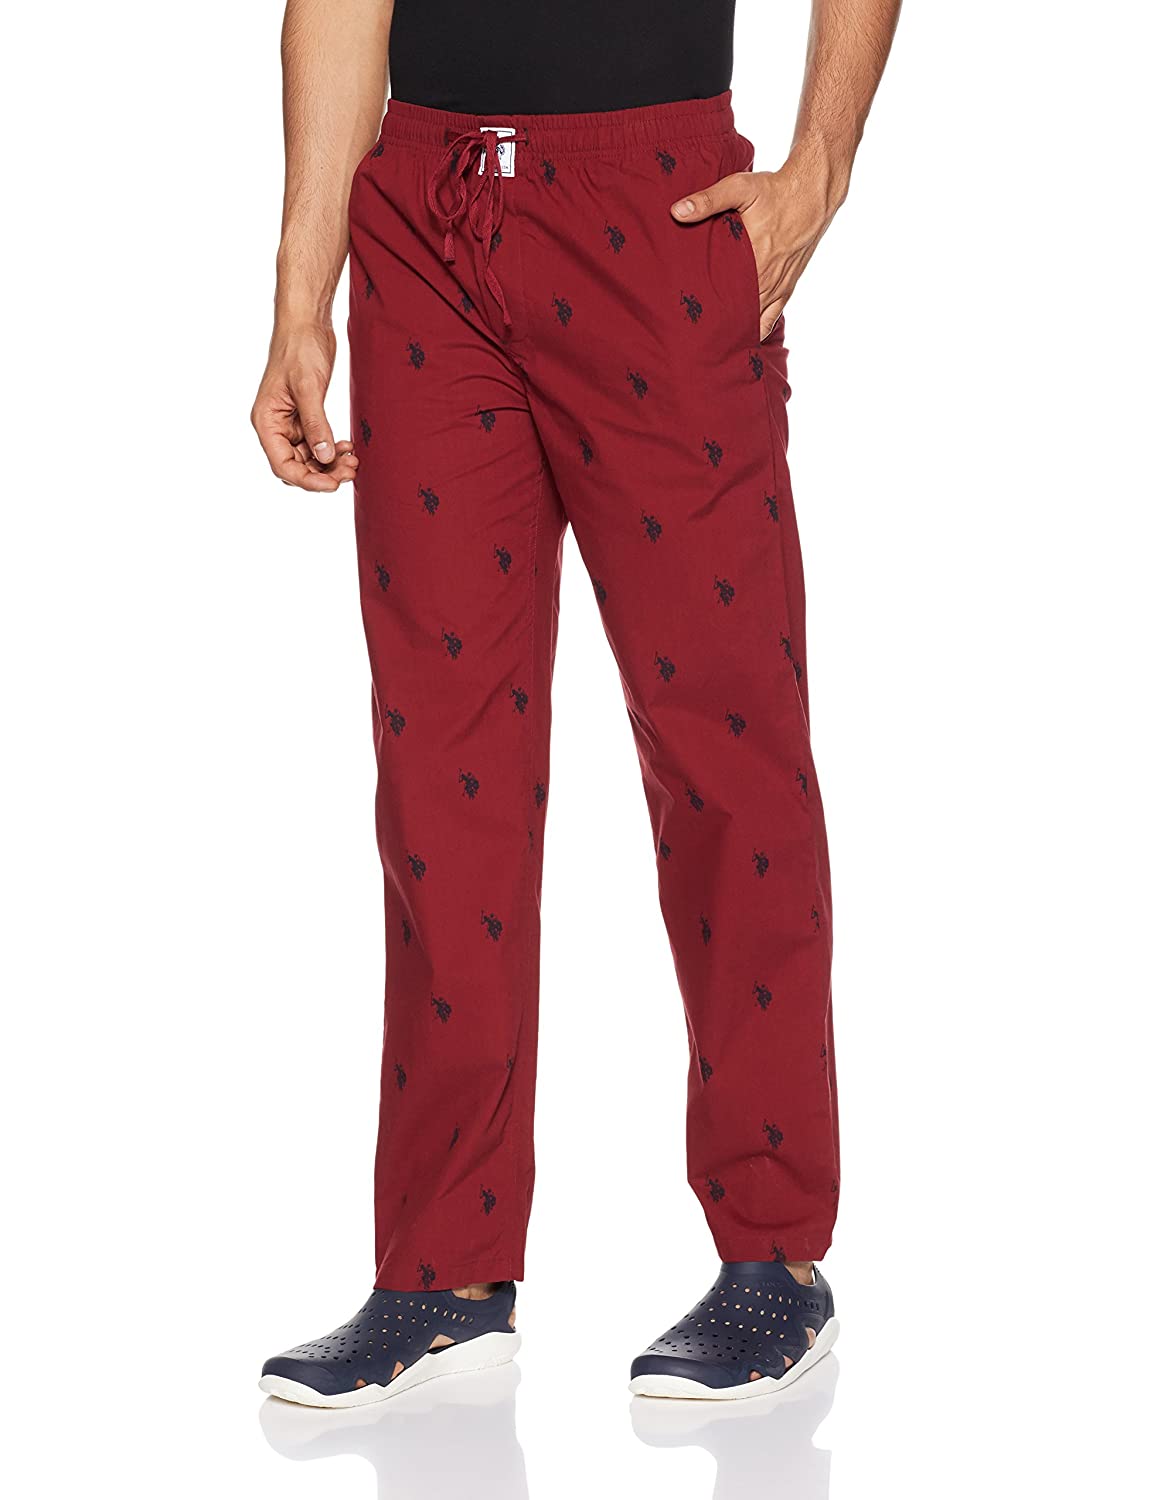 US Polo Maroon Pyjama Lower Night wear for Men - Stilento